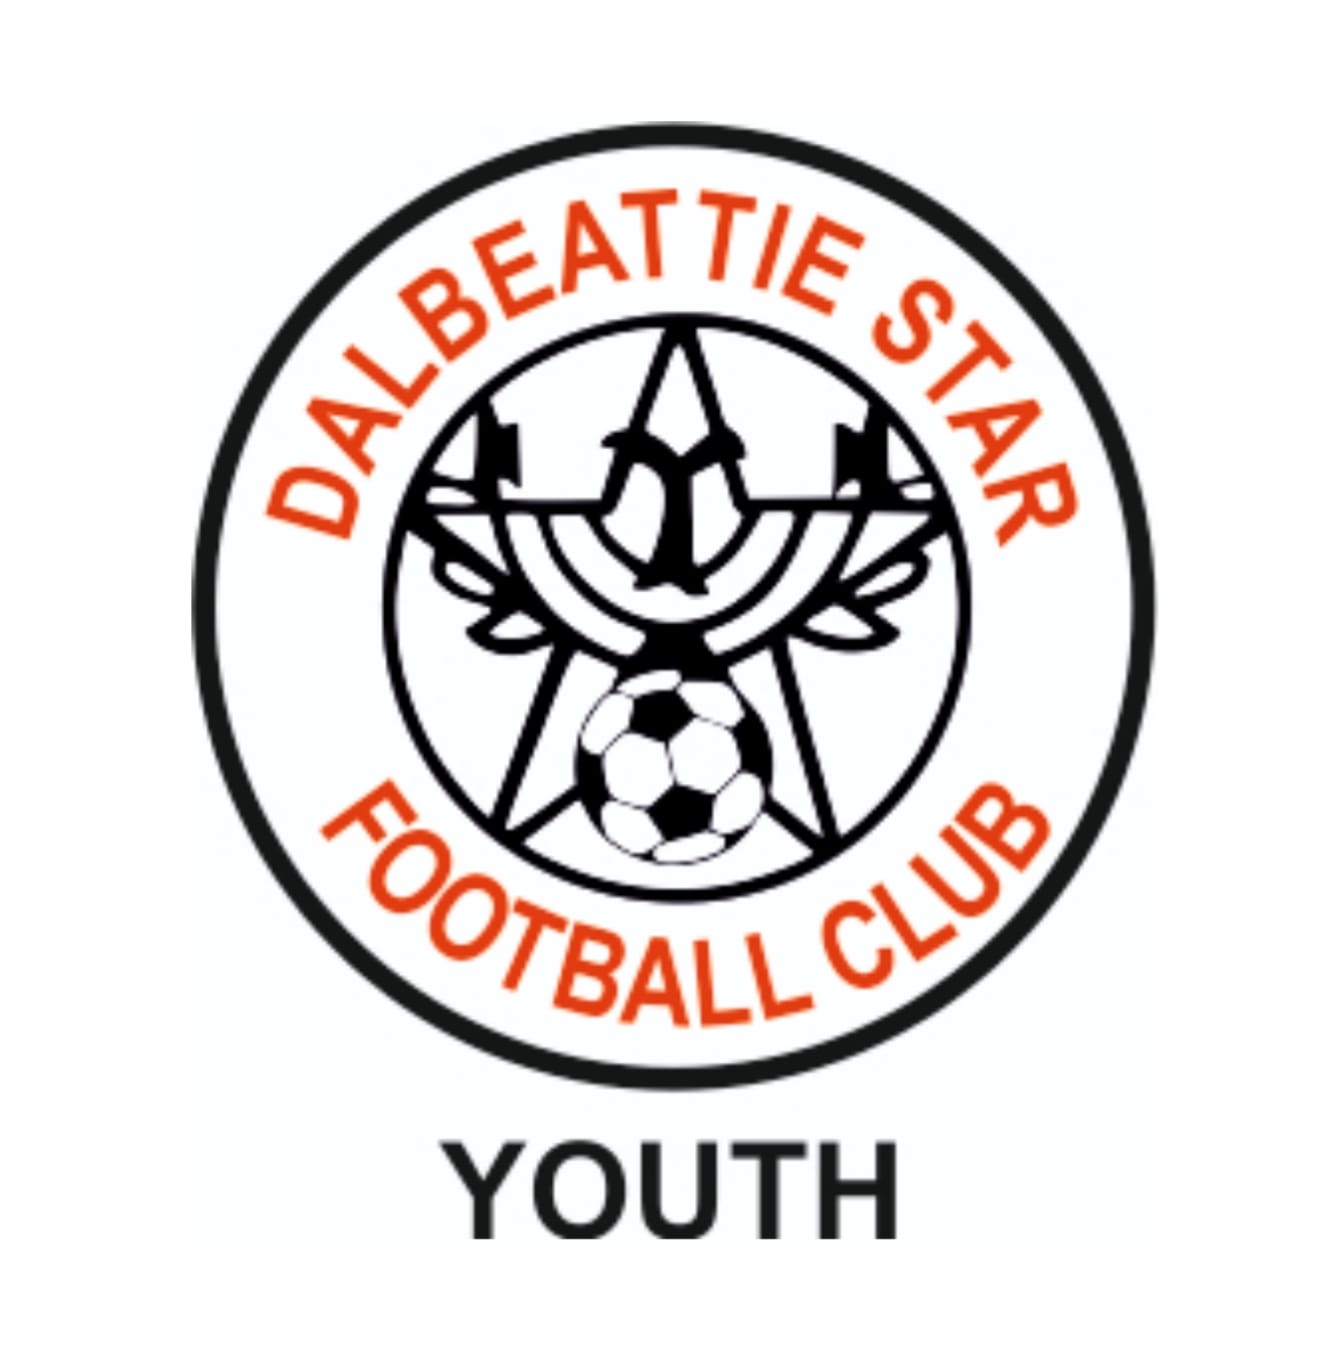 Dalbeattie Star Youth Football Club